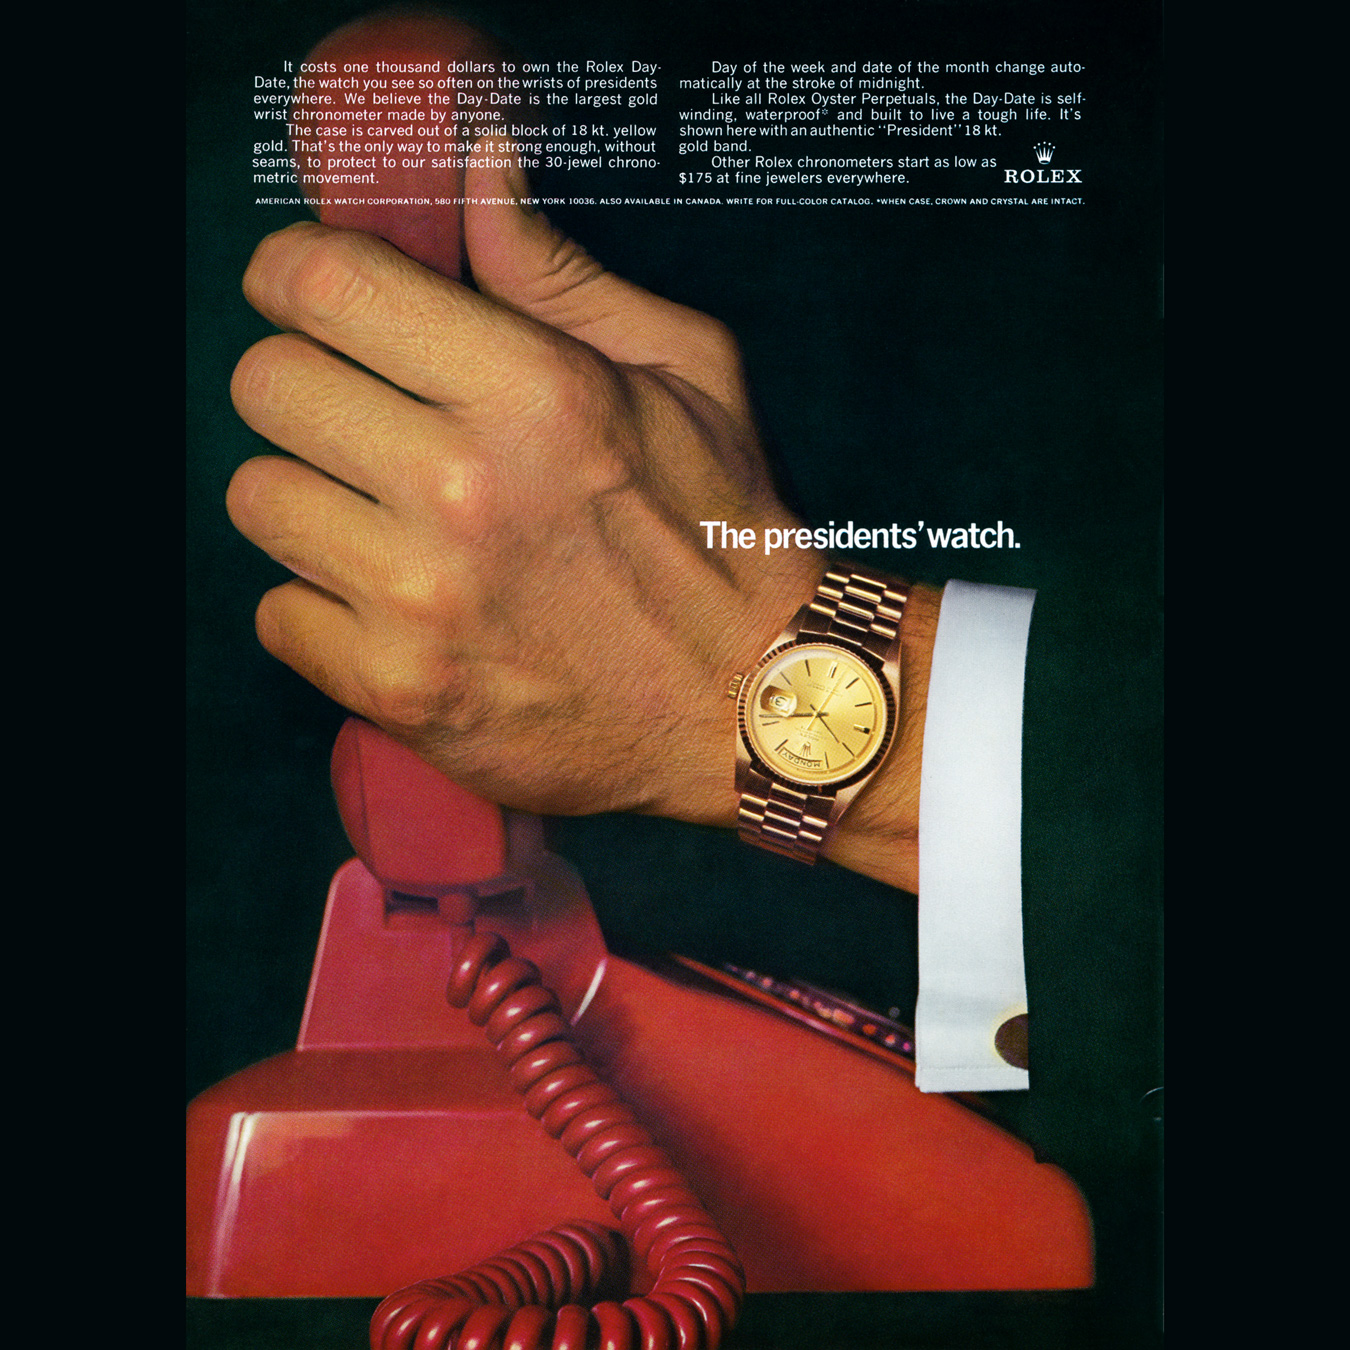 Magazine excerpt featuring gold Rolex watch